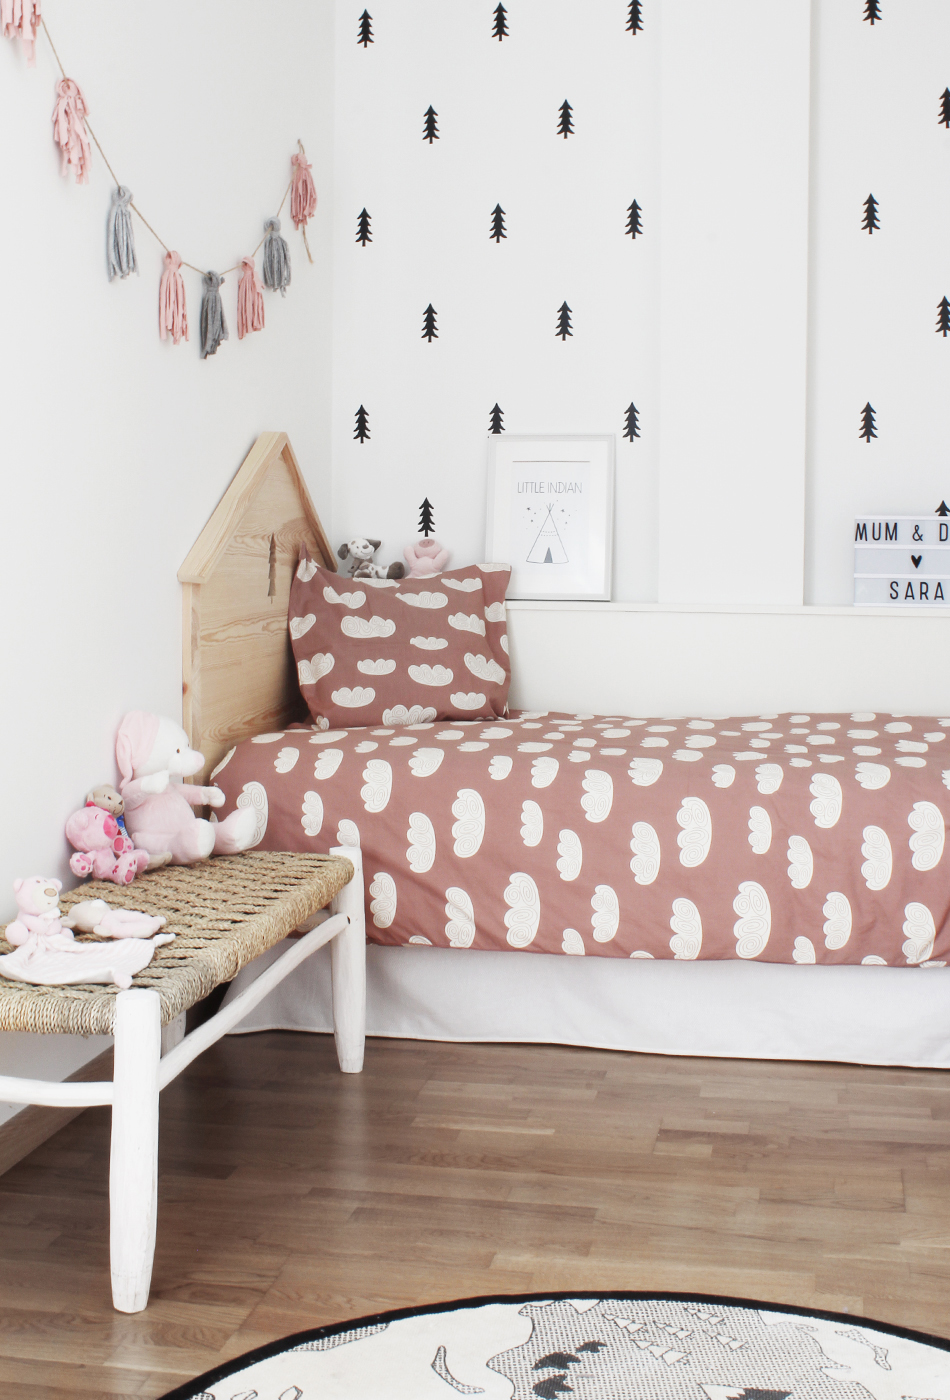 Una preciosa habitación infantil de estilo nórdico